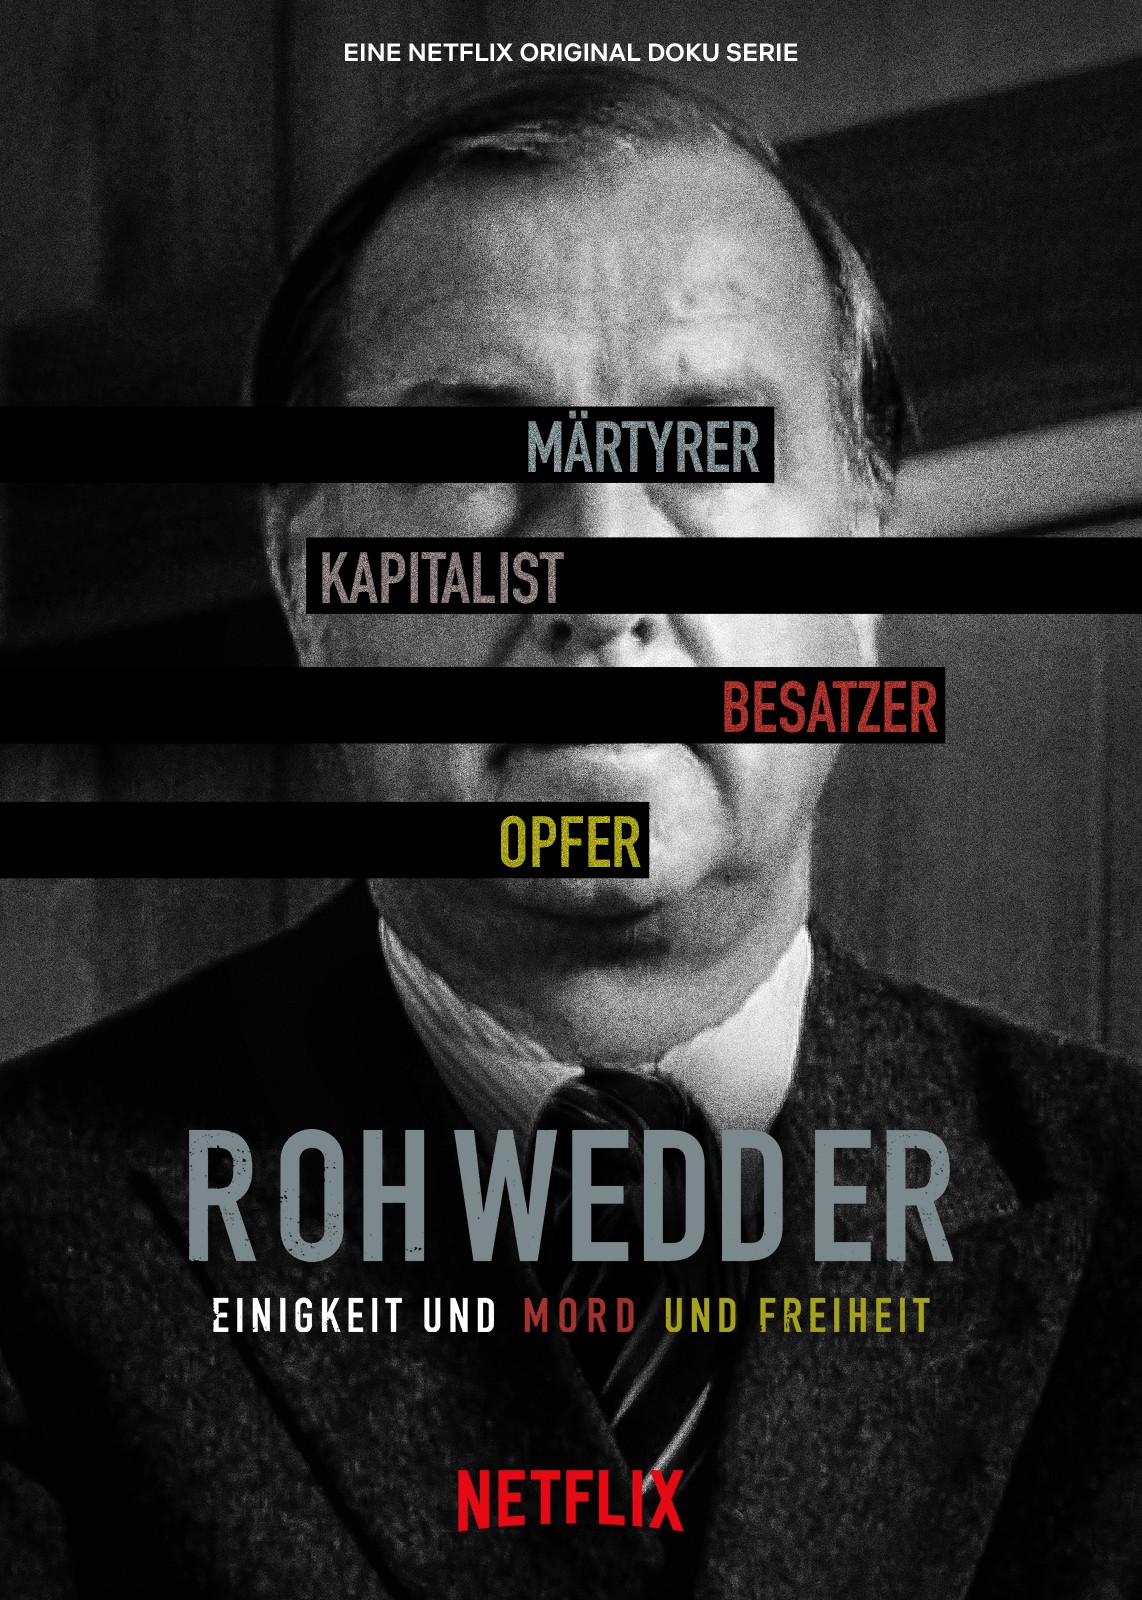 Tội ác hoàn hảo: Vụ ám sát Rohwedder - Tội ác hoàn hảo: Vụ ám sát Rohwedder